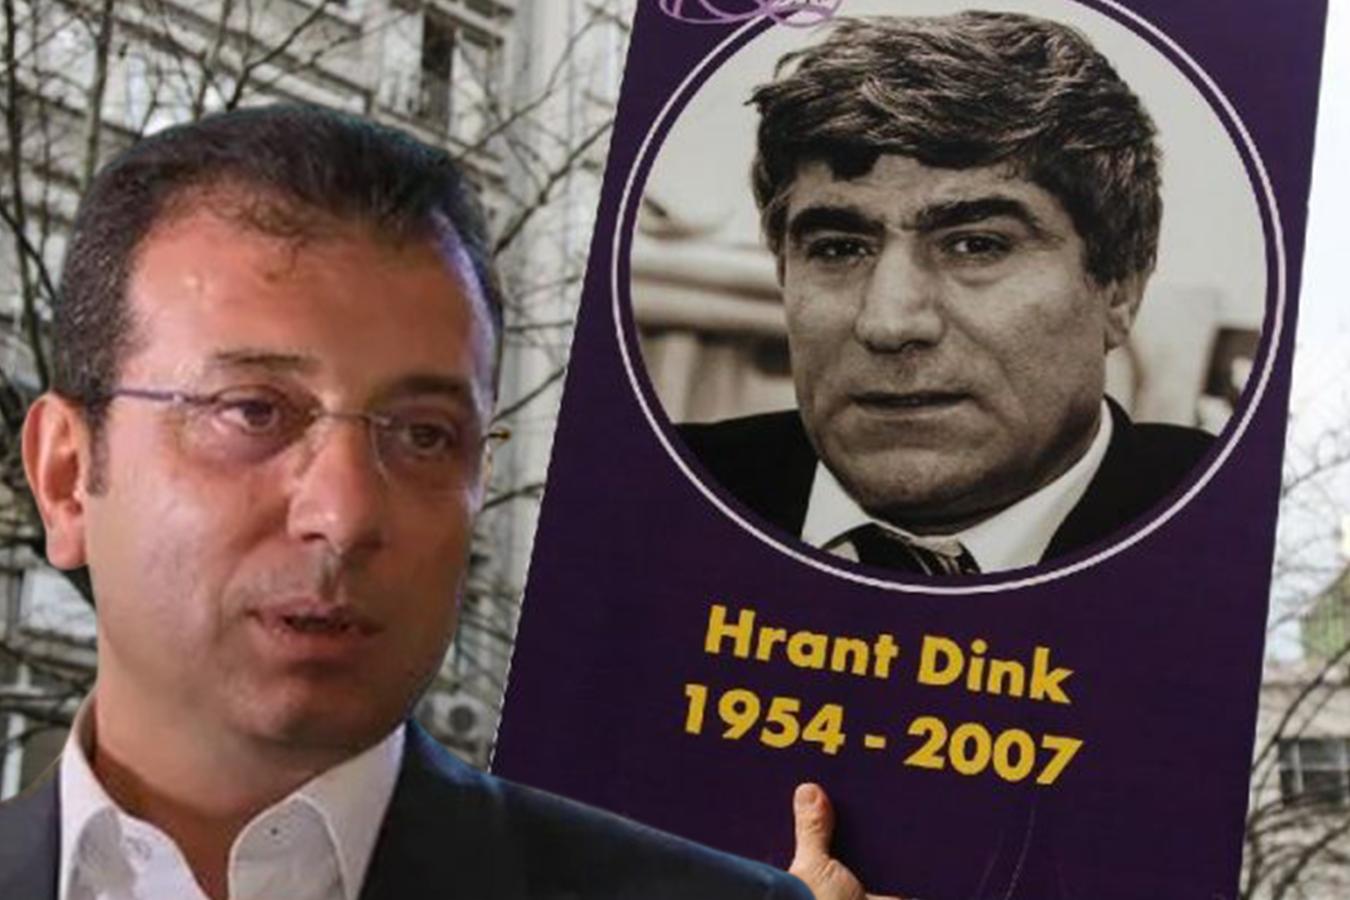 Մի մարդ էր, ում սրտում ու խոսքում խաղաղություն կար. Ստամբուլի քաղաքապետը Դինքի սպանության տարելիցի օրը ցավակցական գրառում է արել